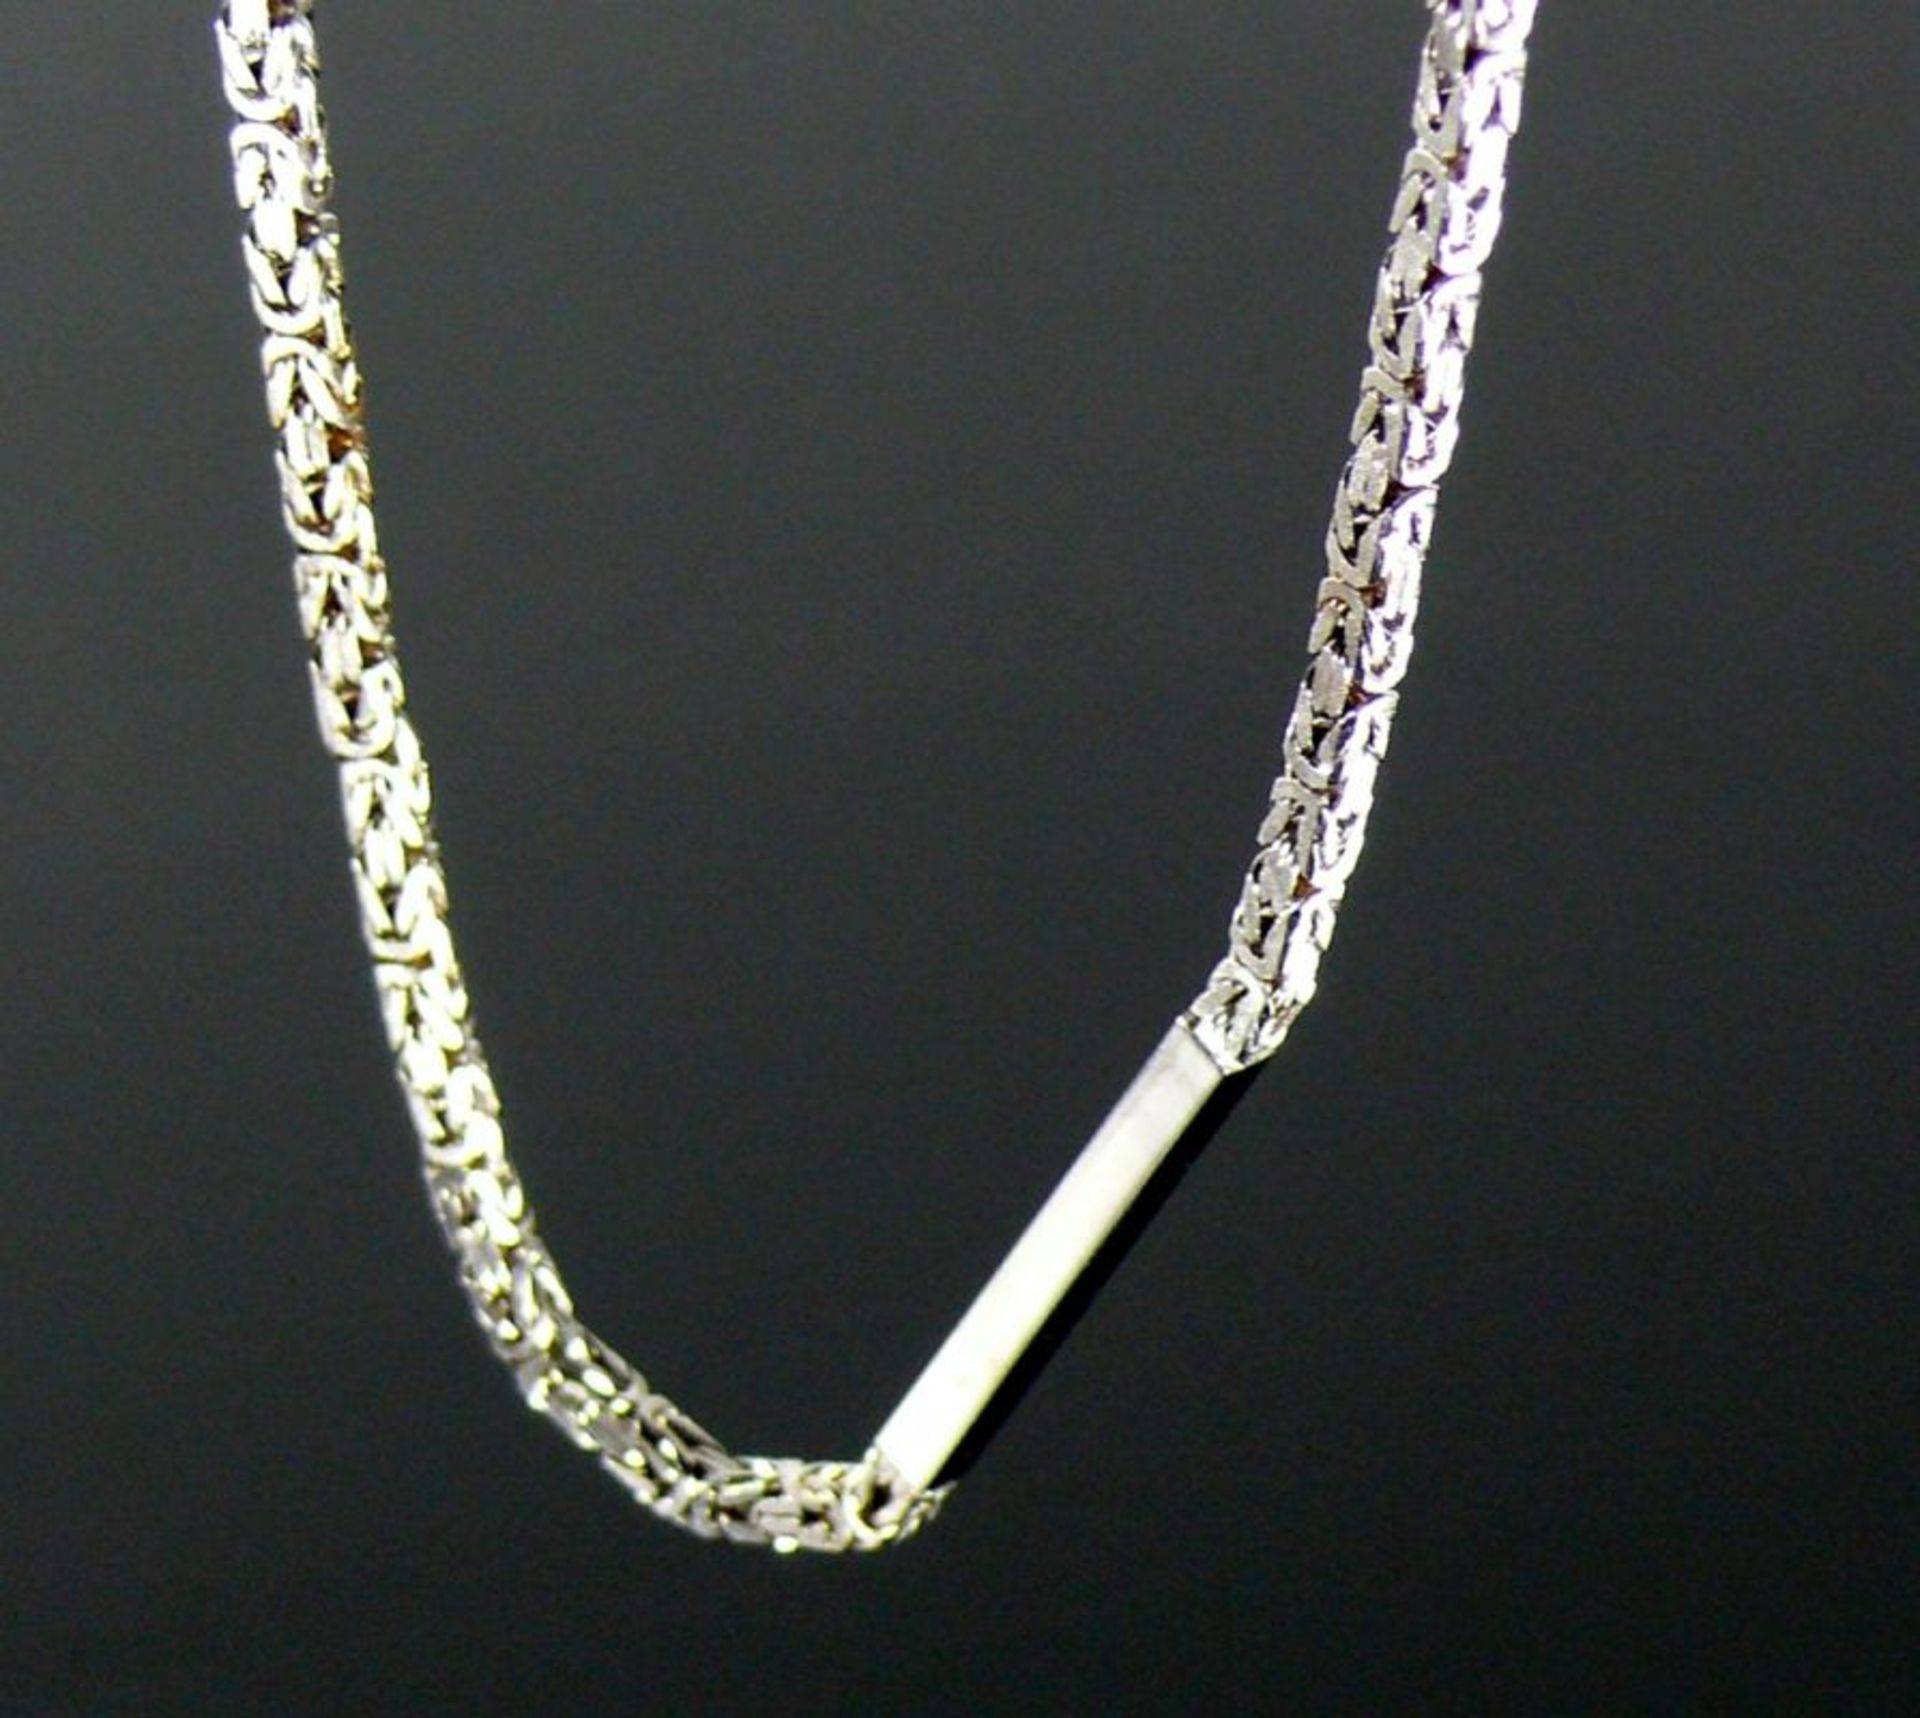 HalsketteKönigskette mit Stäben unterbrochen; in 18ct WG; endlos; L: 42,5 (85) cm; 70g - Bild 2 aus 2